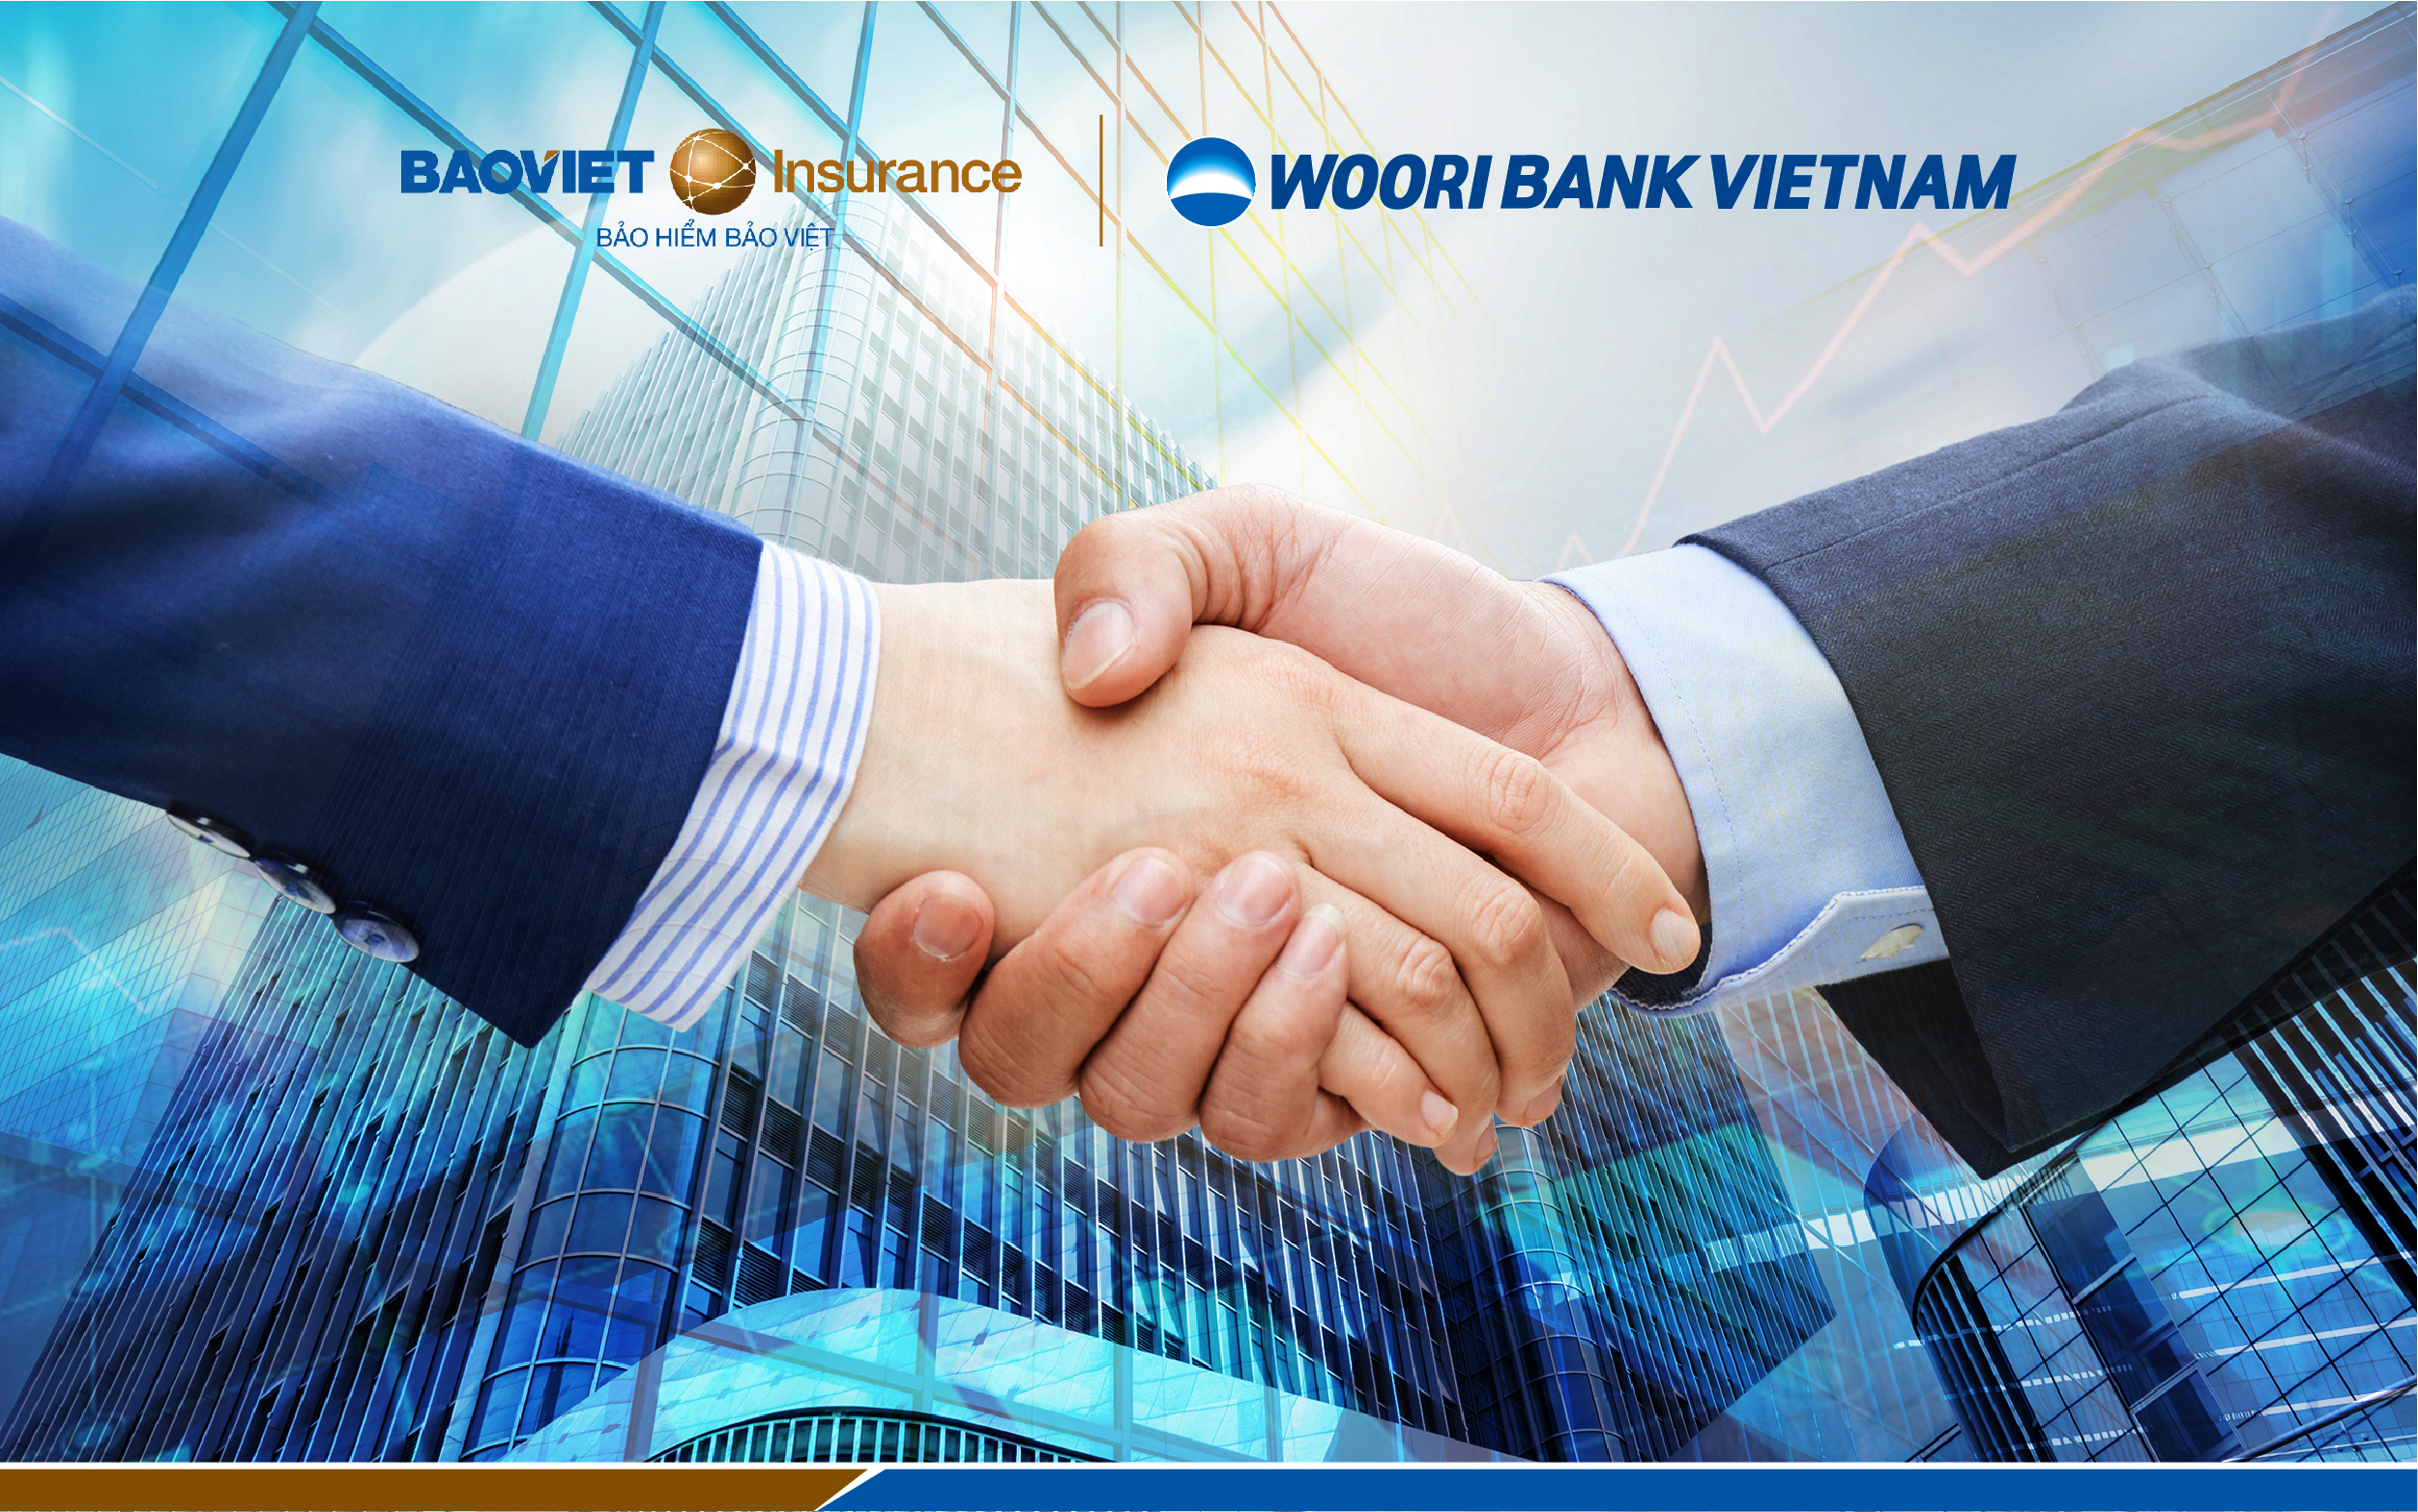 Bảo hiểm Bảo Việt bắt tay cùng Woori Bank